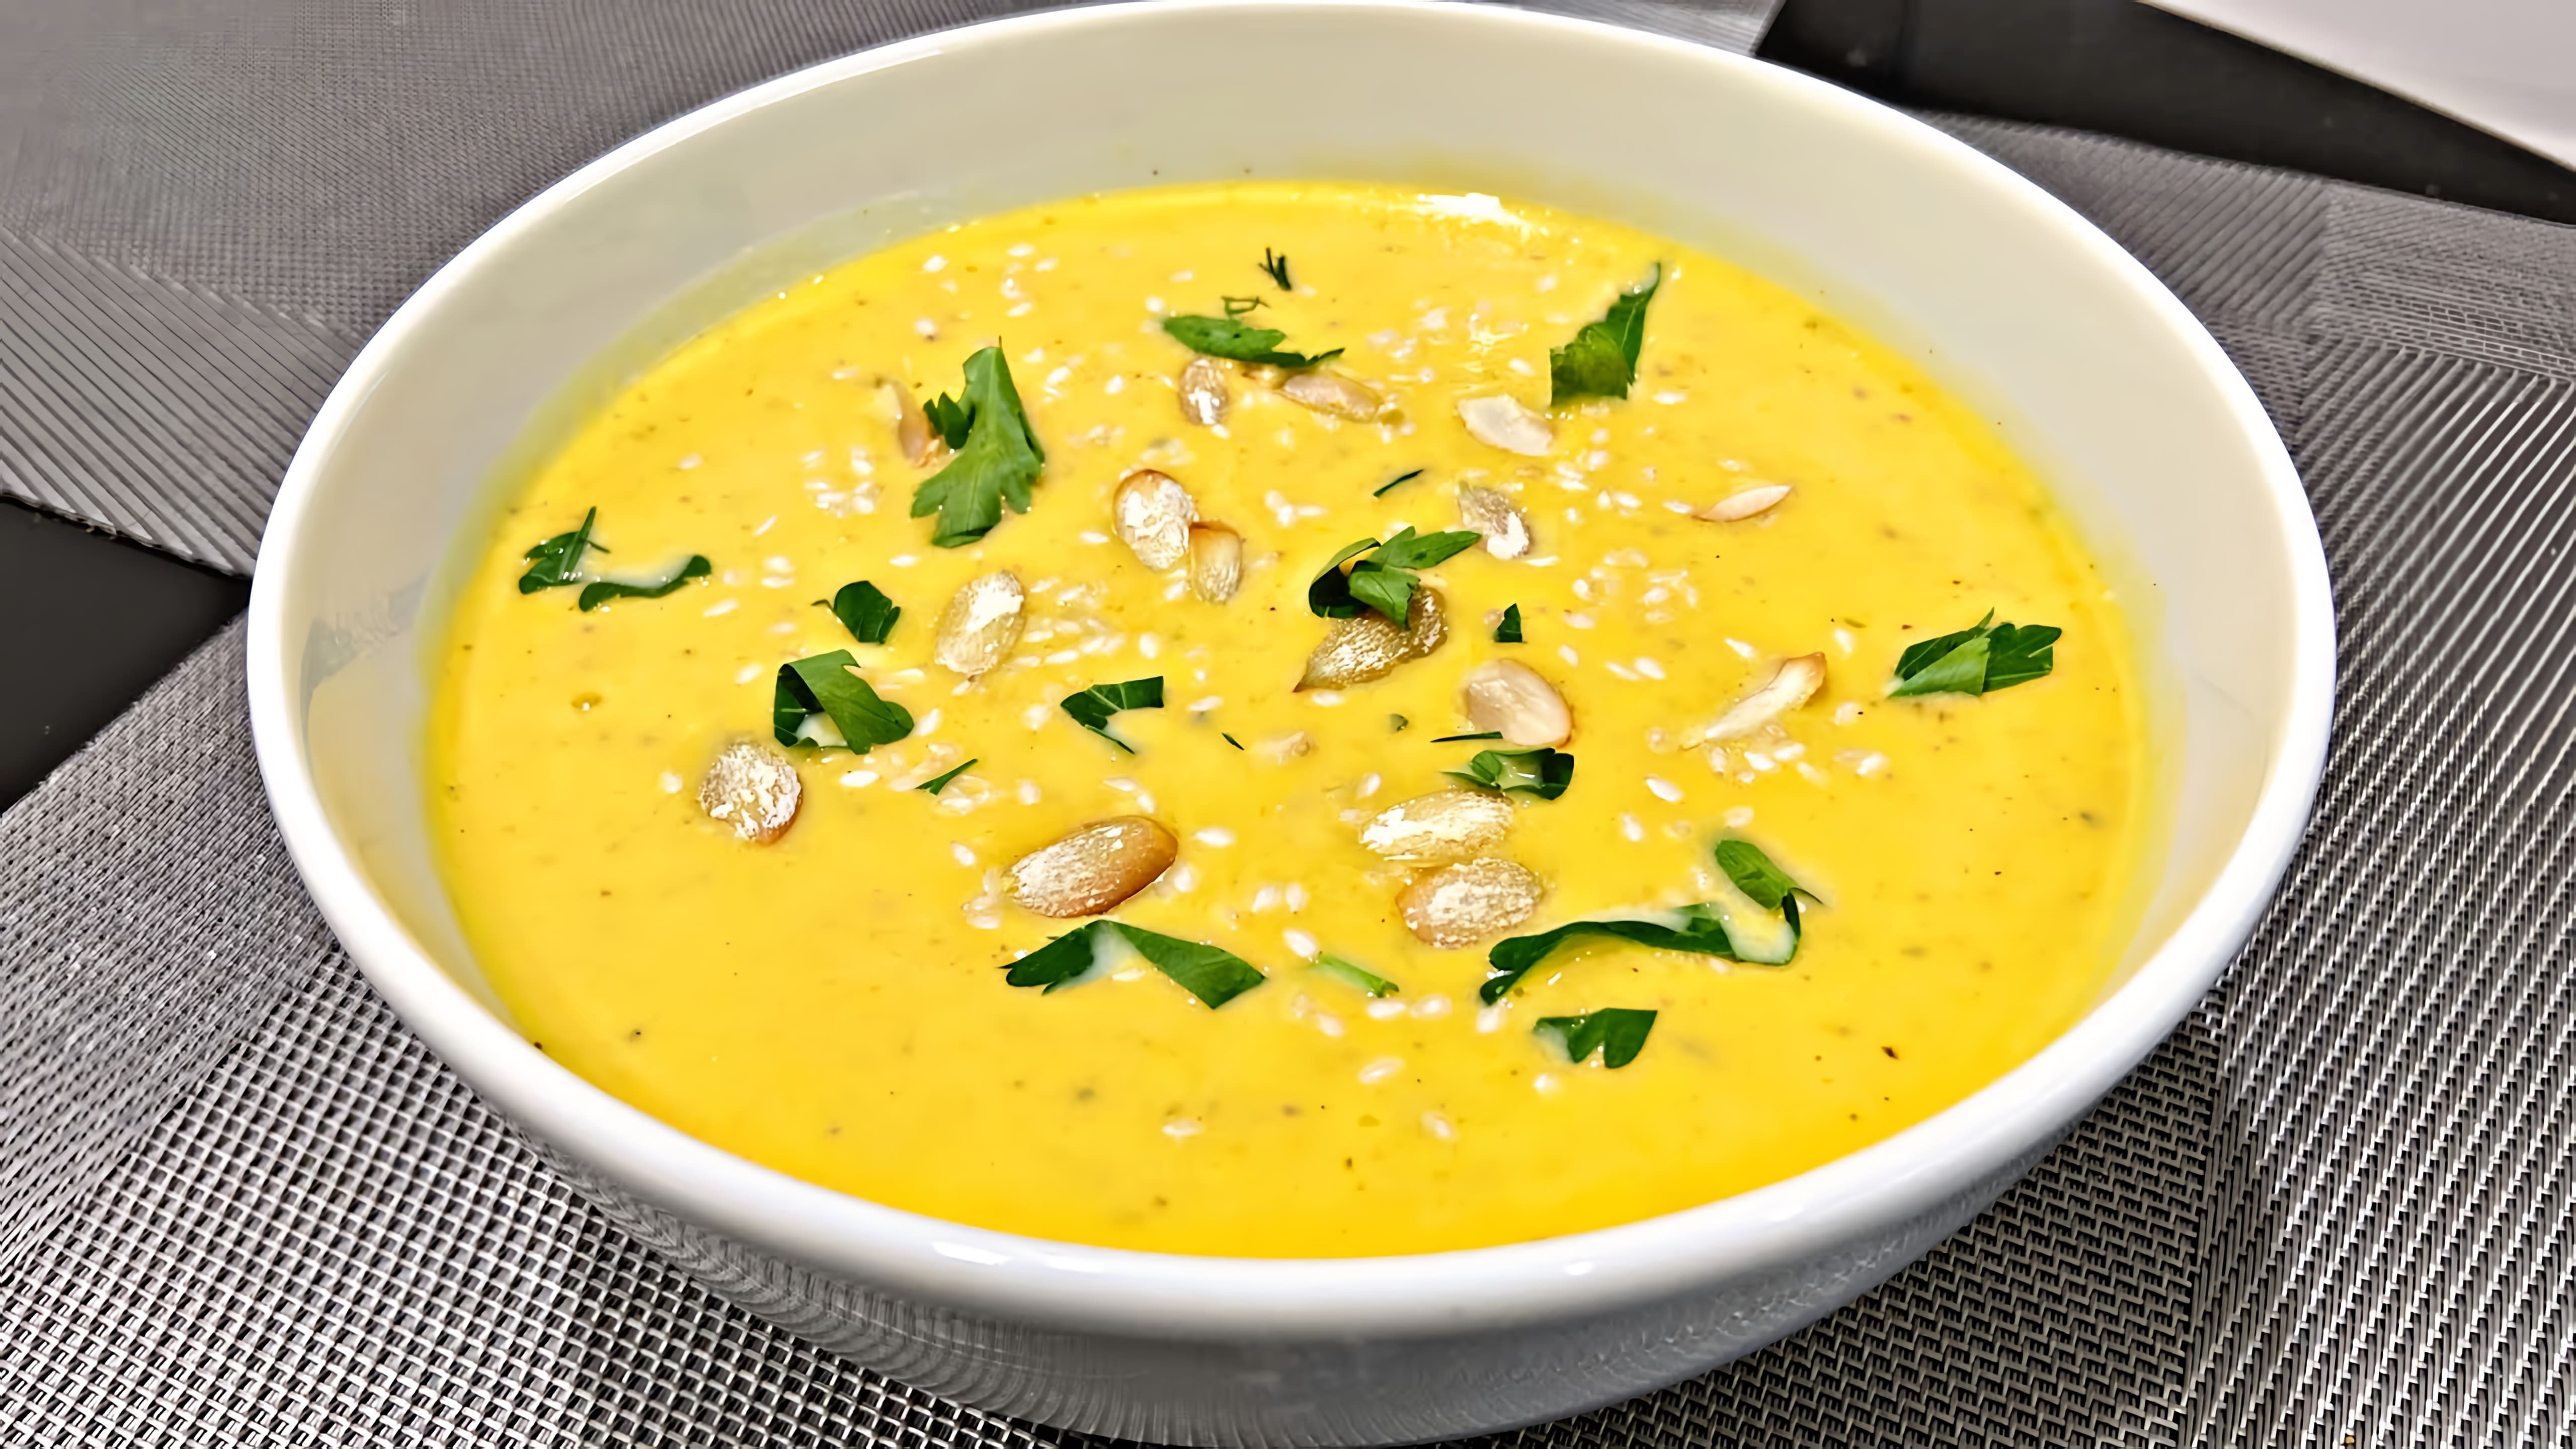 Тыквенный суп-пюре - это вкусное и полезное блюдо, которое можно приготовить в домашних условиях